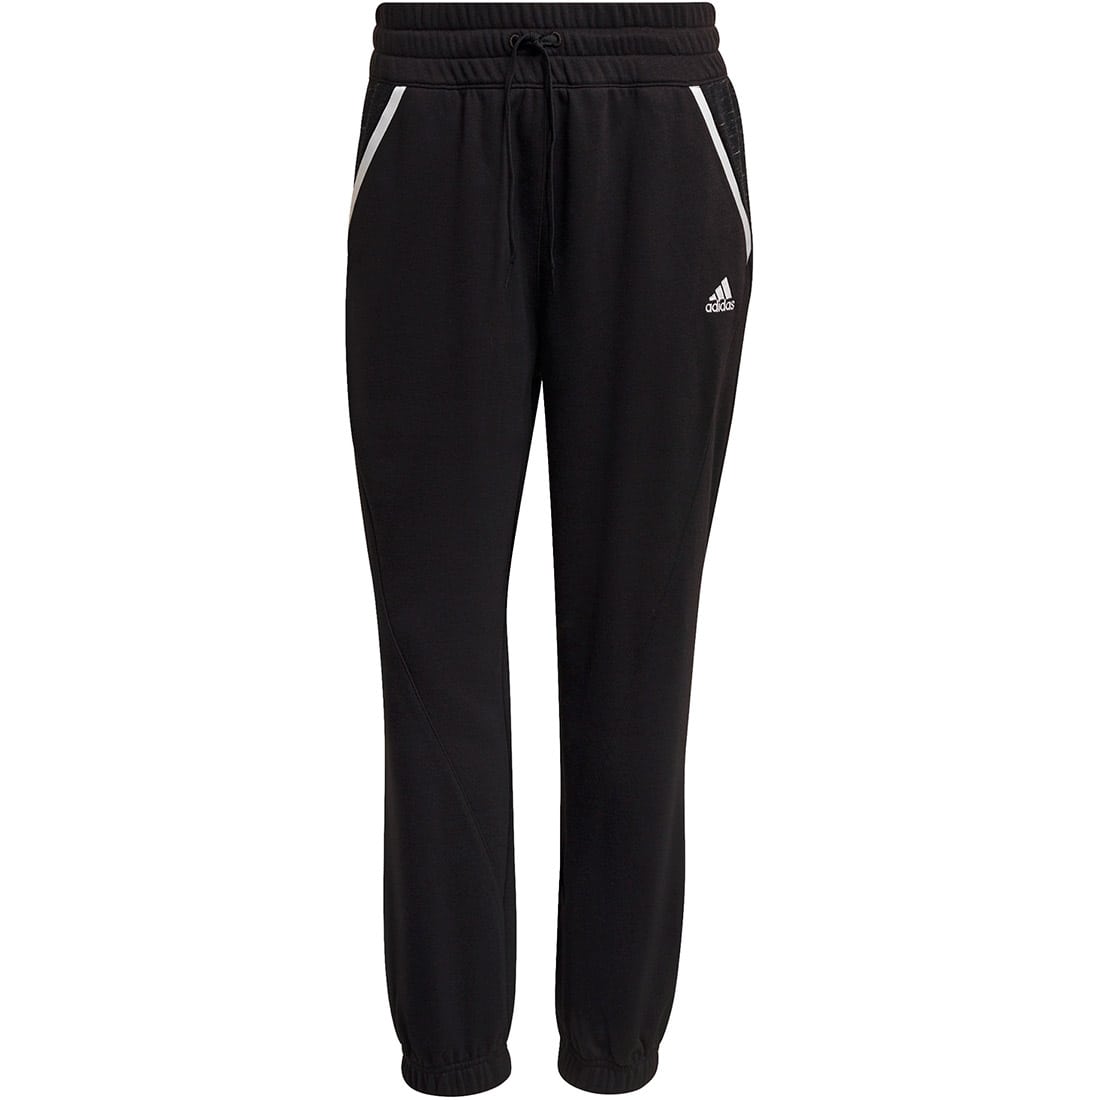 Adidas Damen Sweat Pants Condivo 22 schwarz-weiß